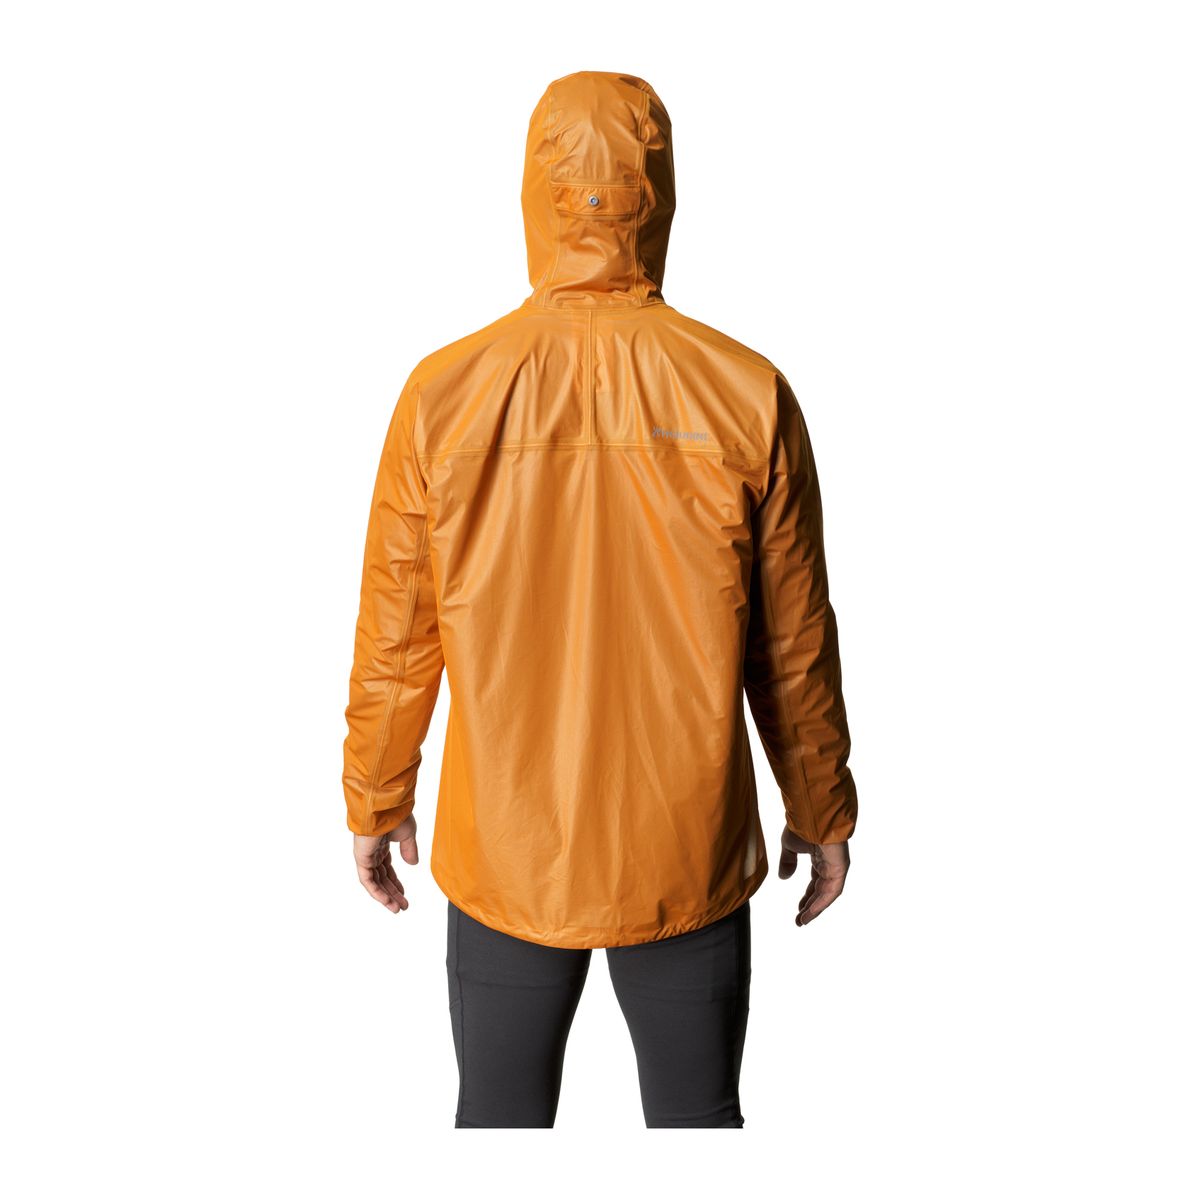 M's The Orange Jacket